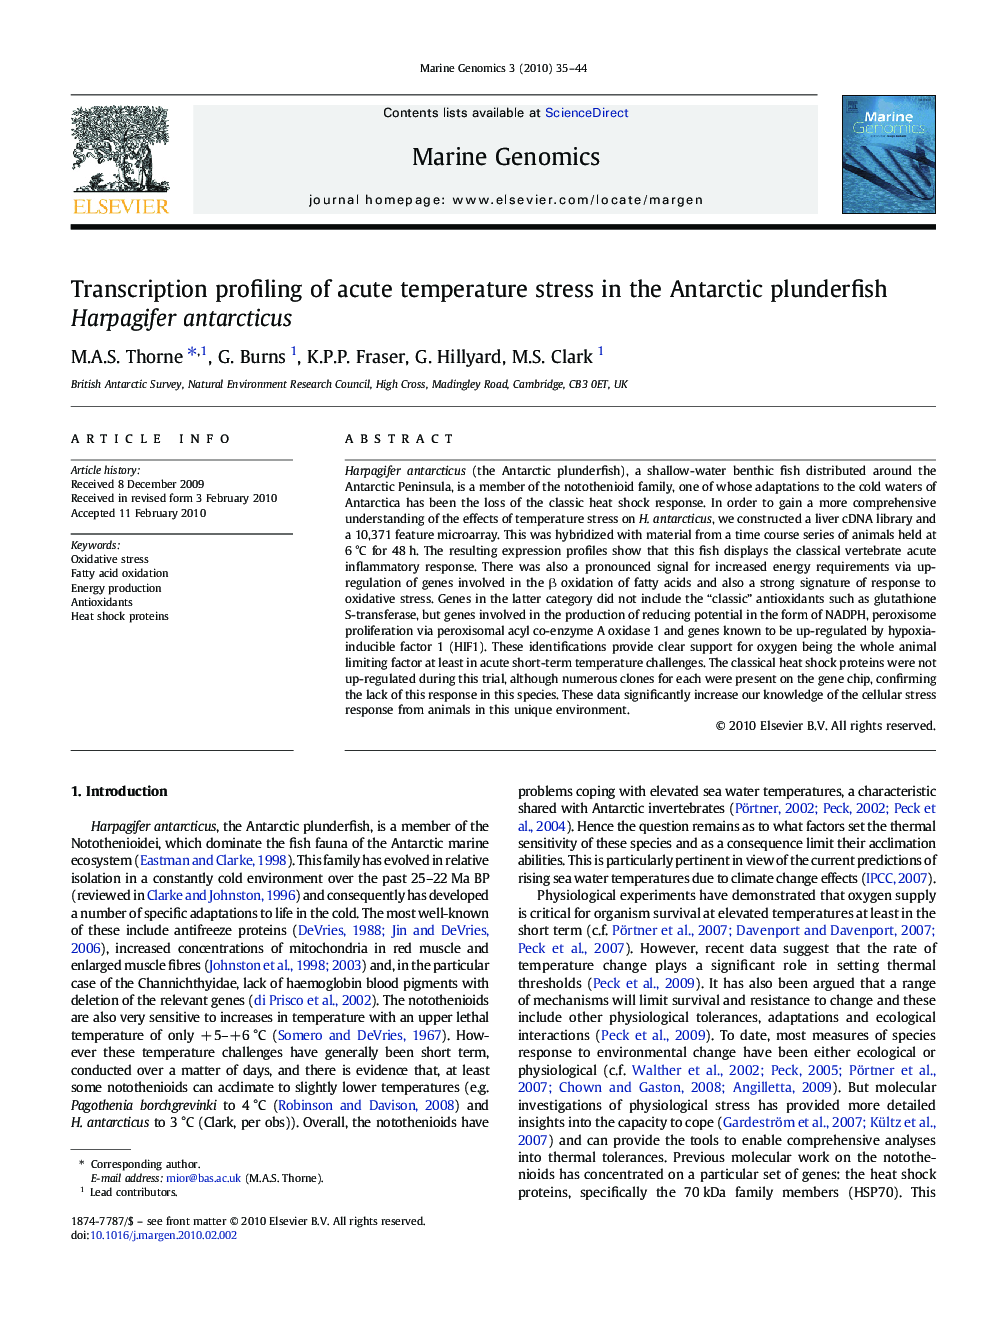 Transcription profiling of acute temperature stress in the Antarctic plunderfish Harpagifer antarcticus